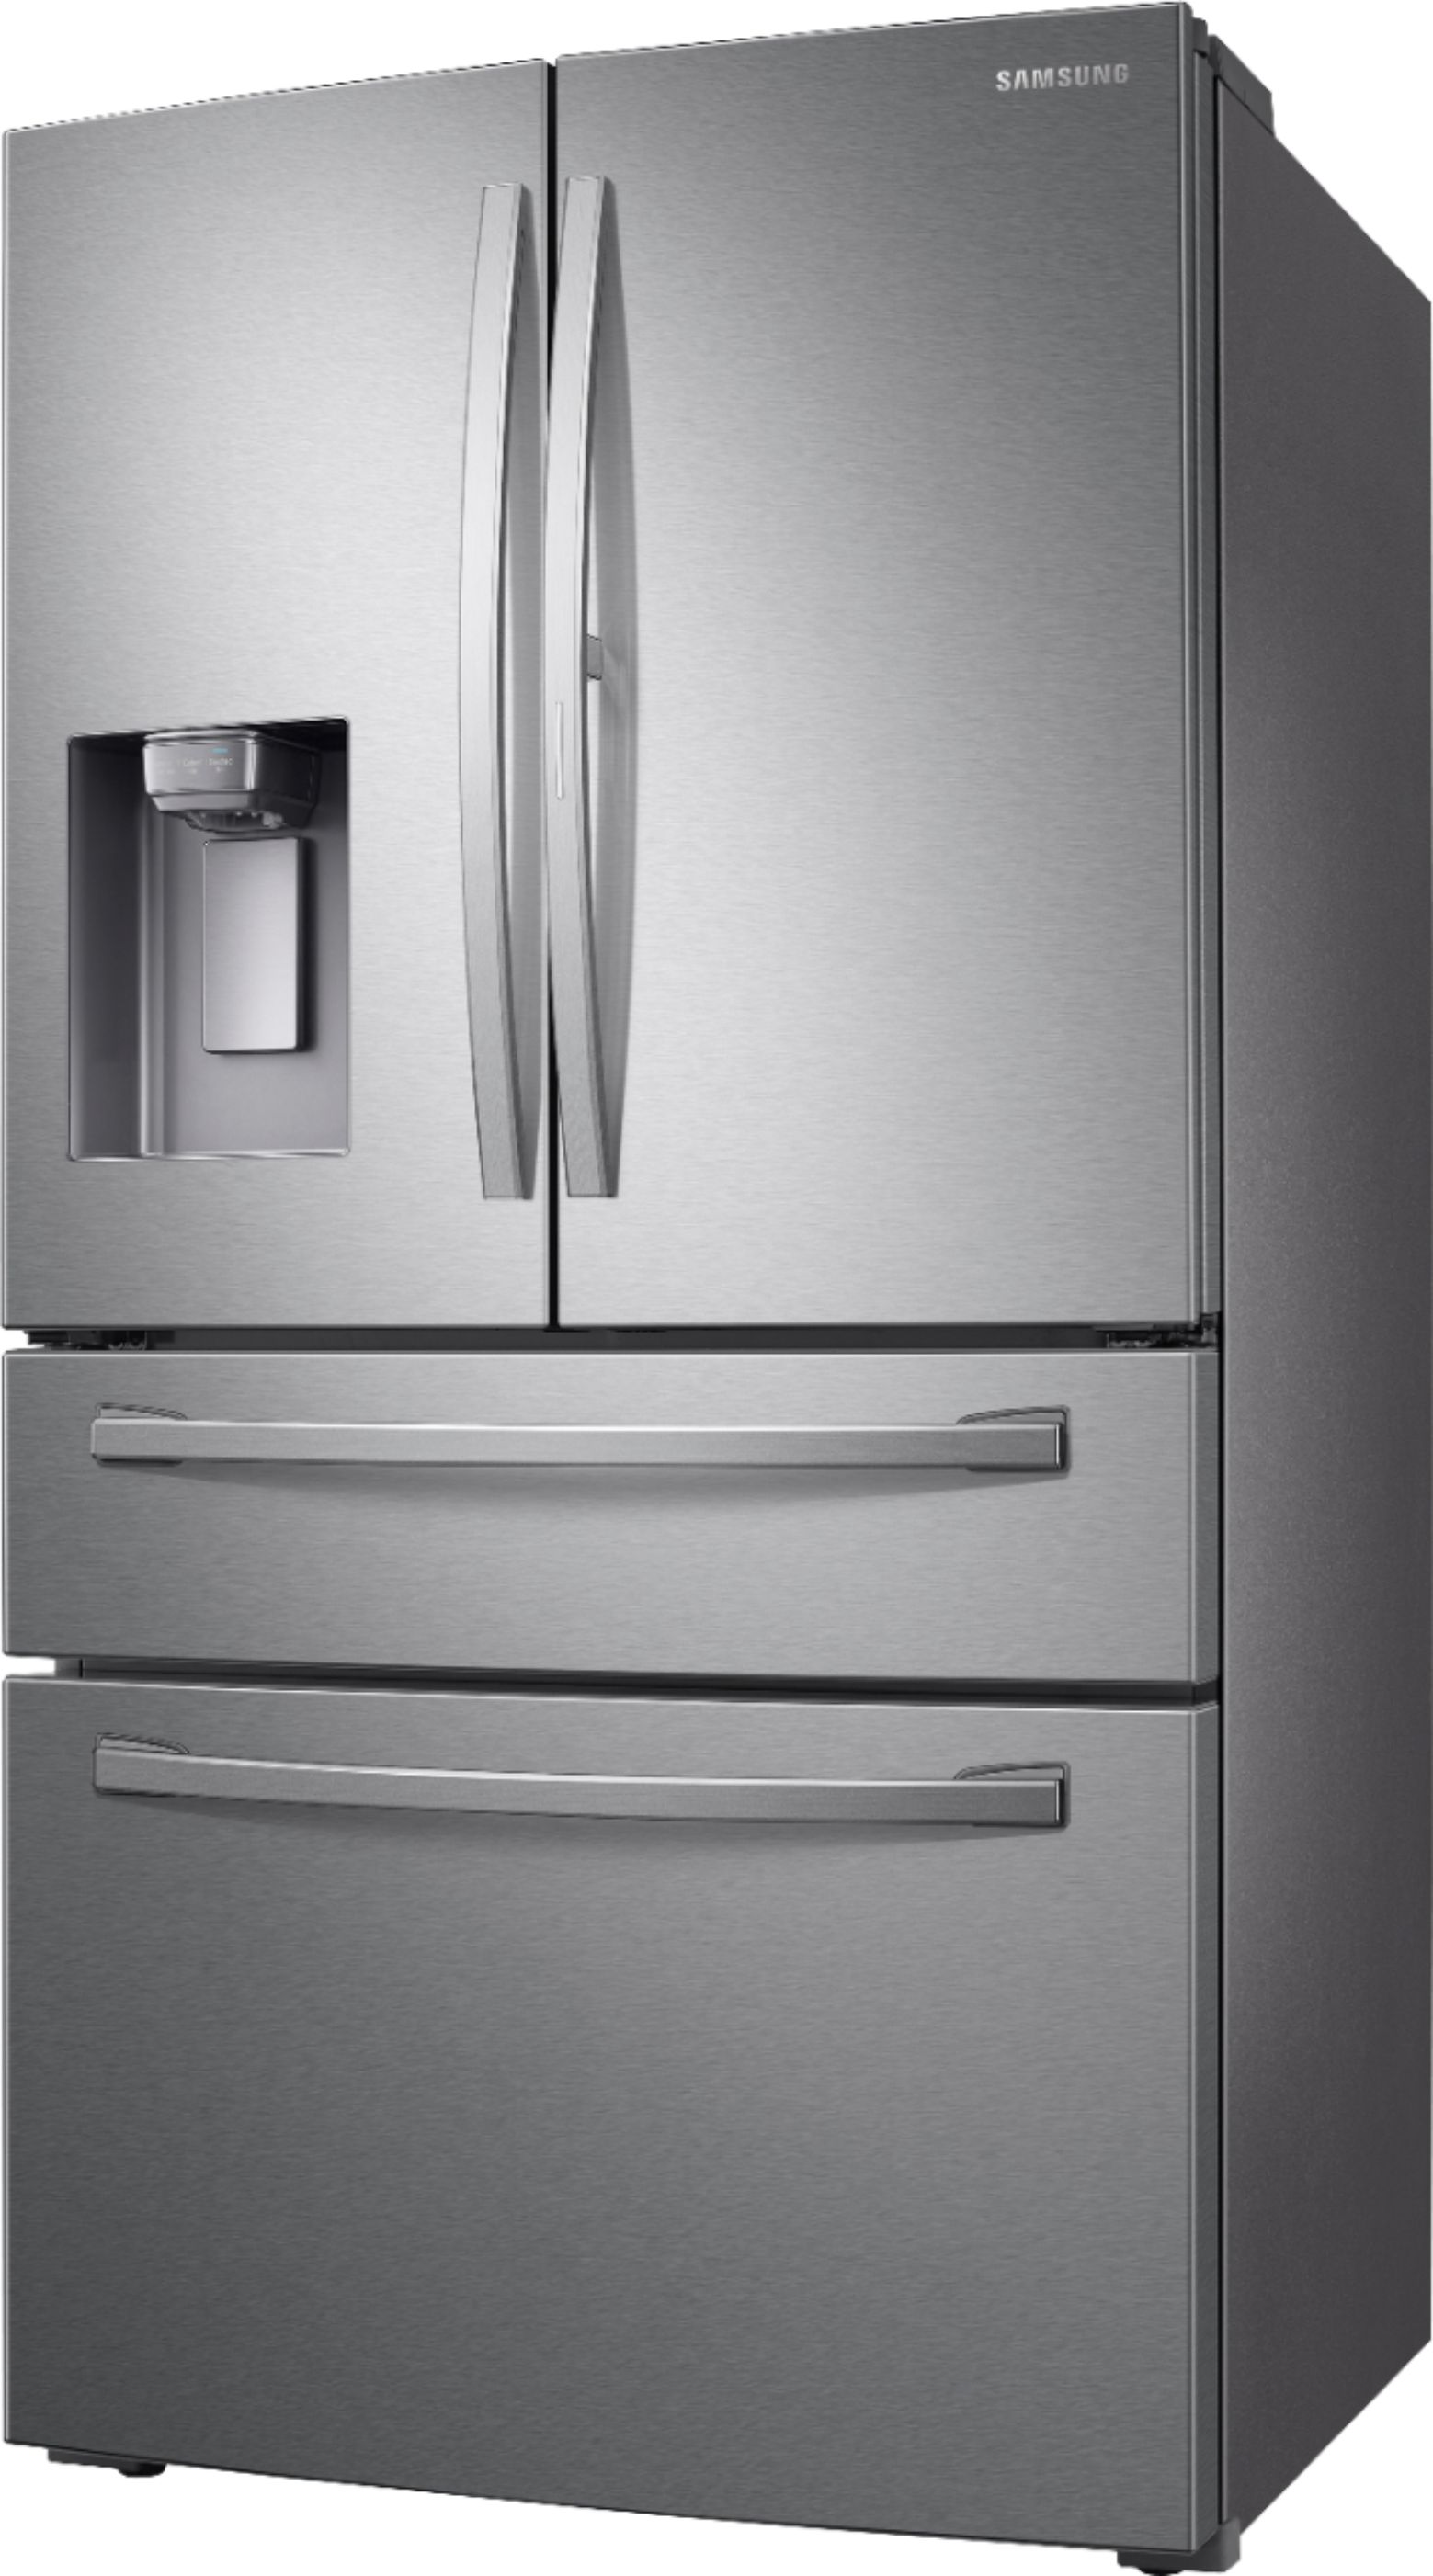 Left View: KitchenAid - 25.8 Cu. Ft. 5-Door French Door Refrigerator - Black Stainless Steel